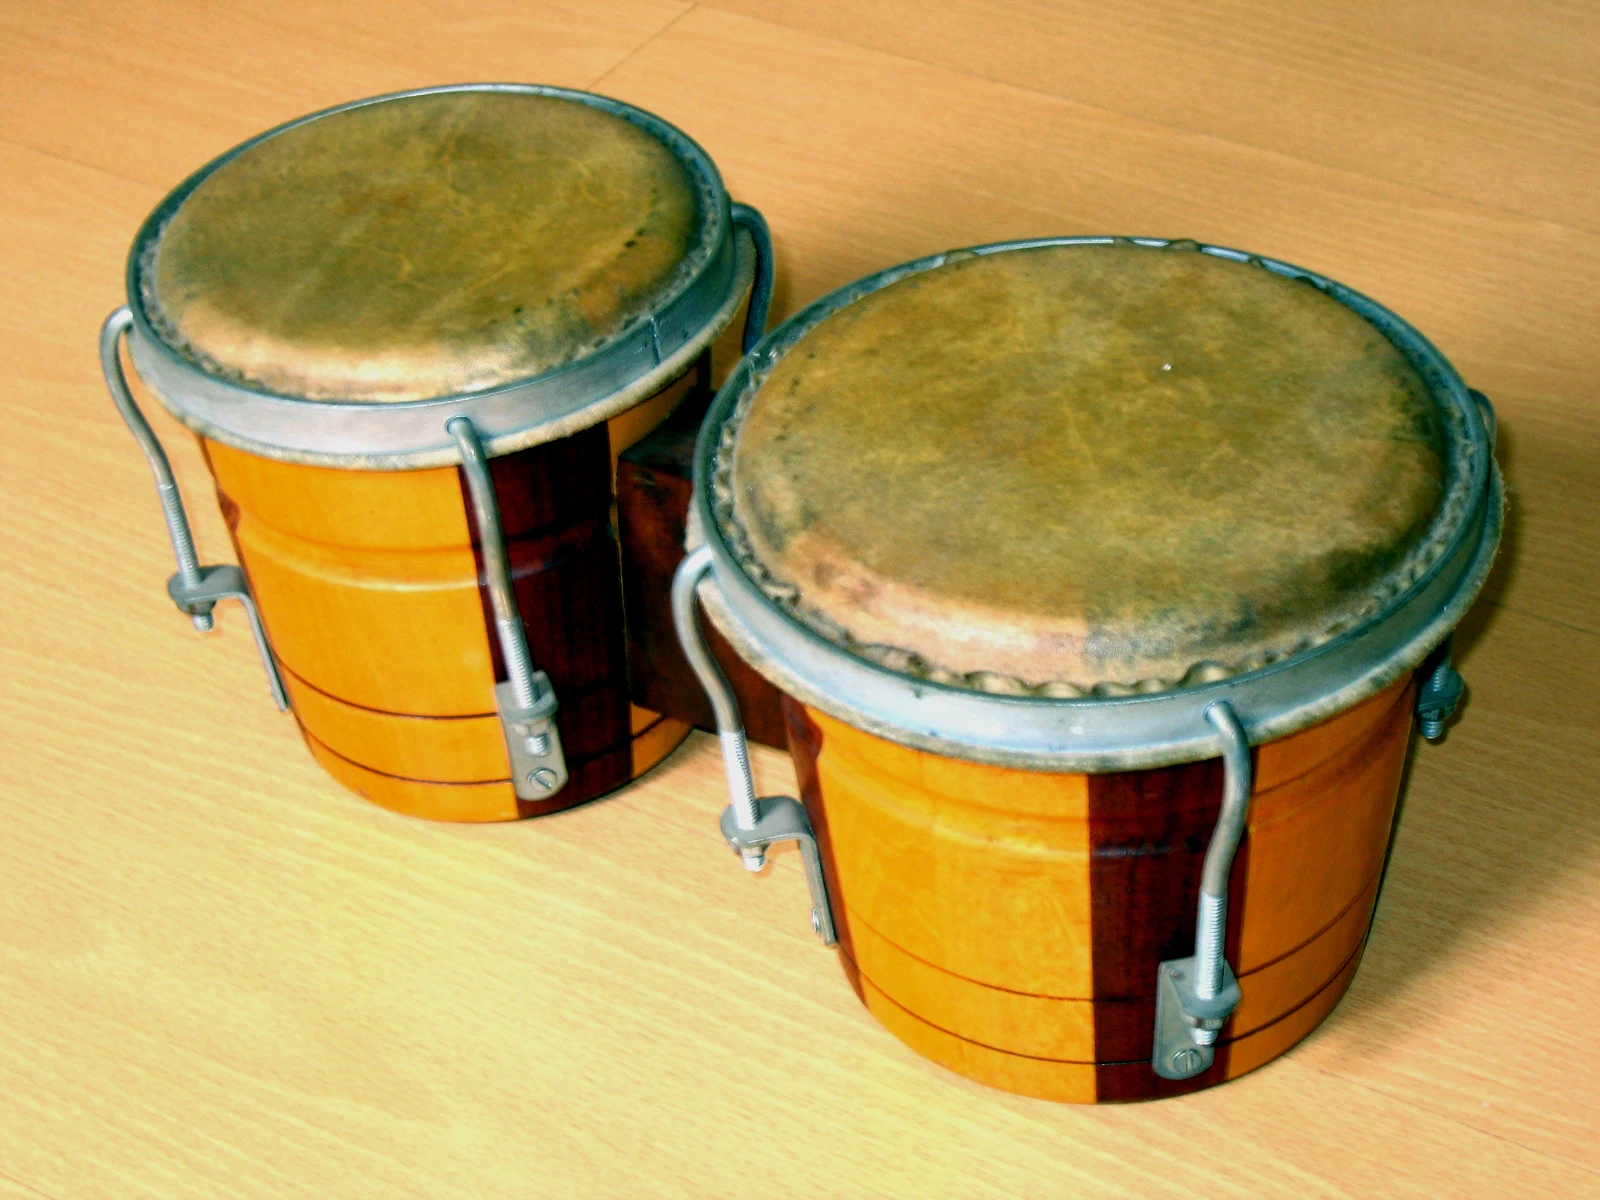 邦哥鼓（英语：Bongos），又称为曼波鼓，是源于拉丁美洲的一种鼓。以两个不同大小的单皮鼓为一组，以铁片或木将两个鼓接驳在一起，因此英文名称多写成Bongos（间中亦有写成Bongoes，但s才是正确写法）。